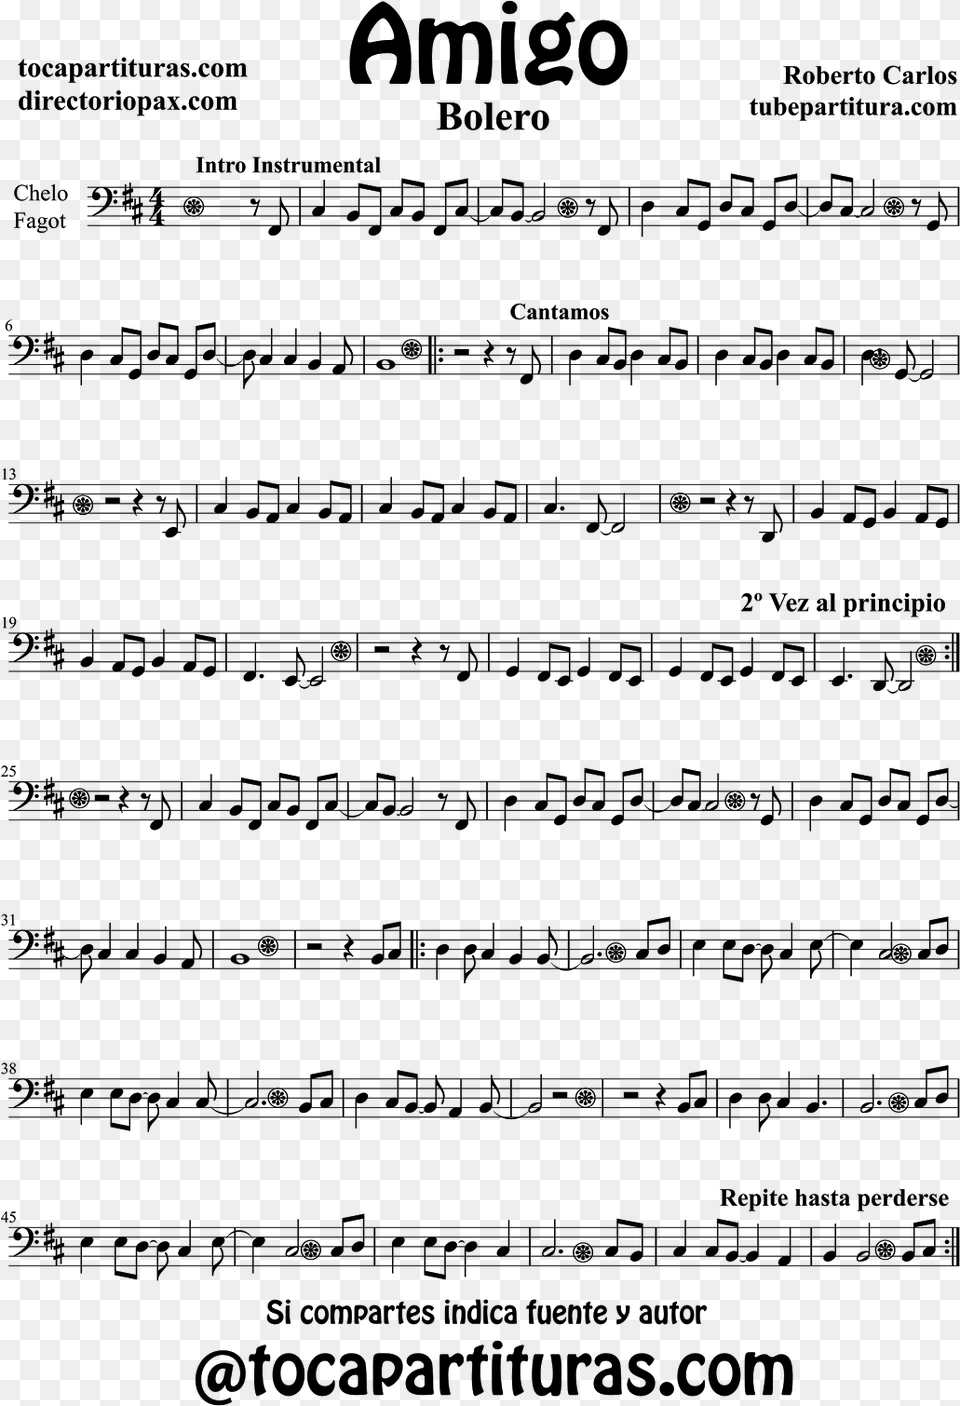 Sheet Music Cello And Bassoon Amigo Partitura De Chelo Partituras De Roberto Carlos, Gray Png Image